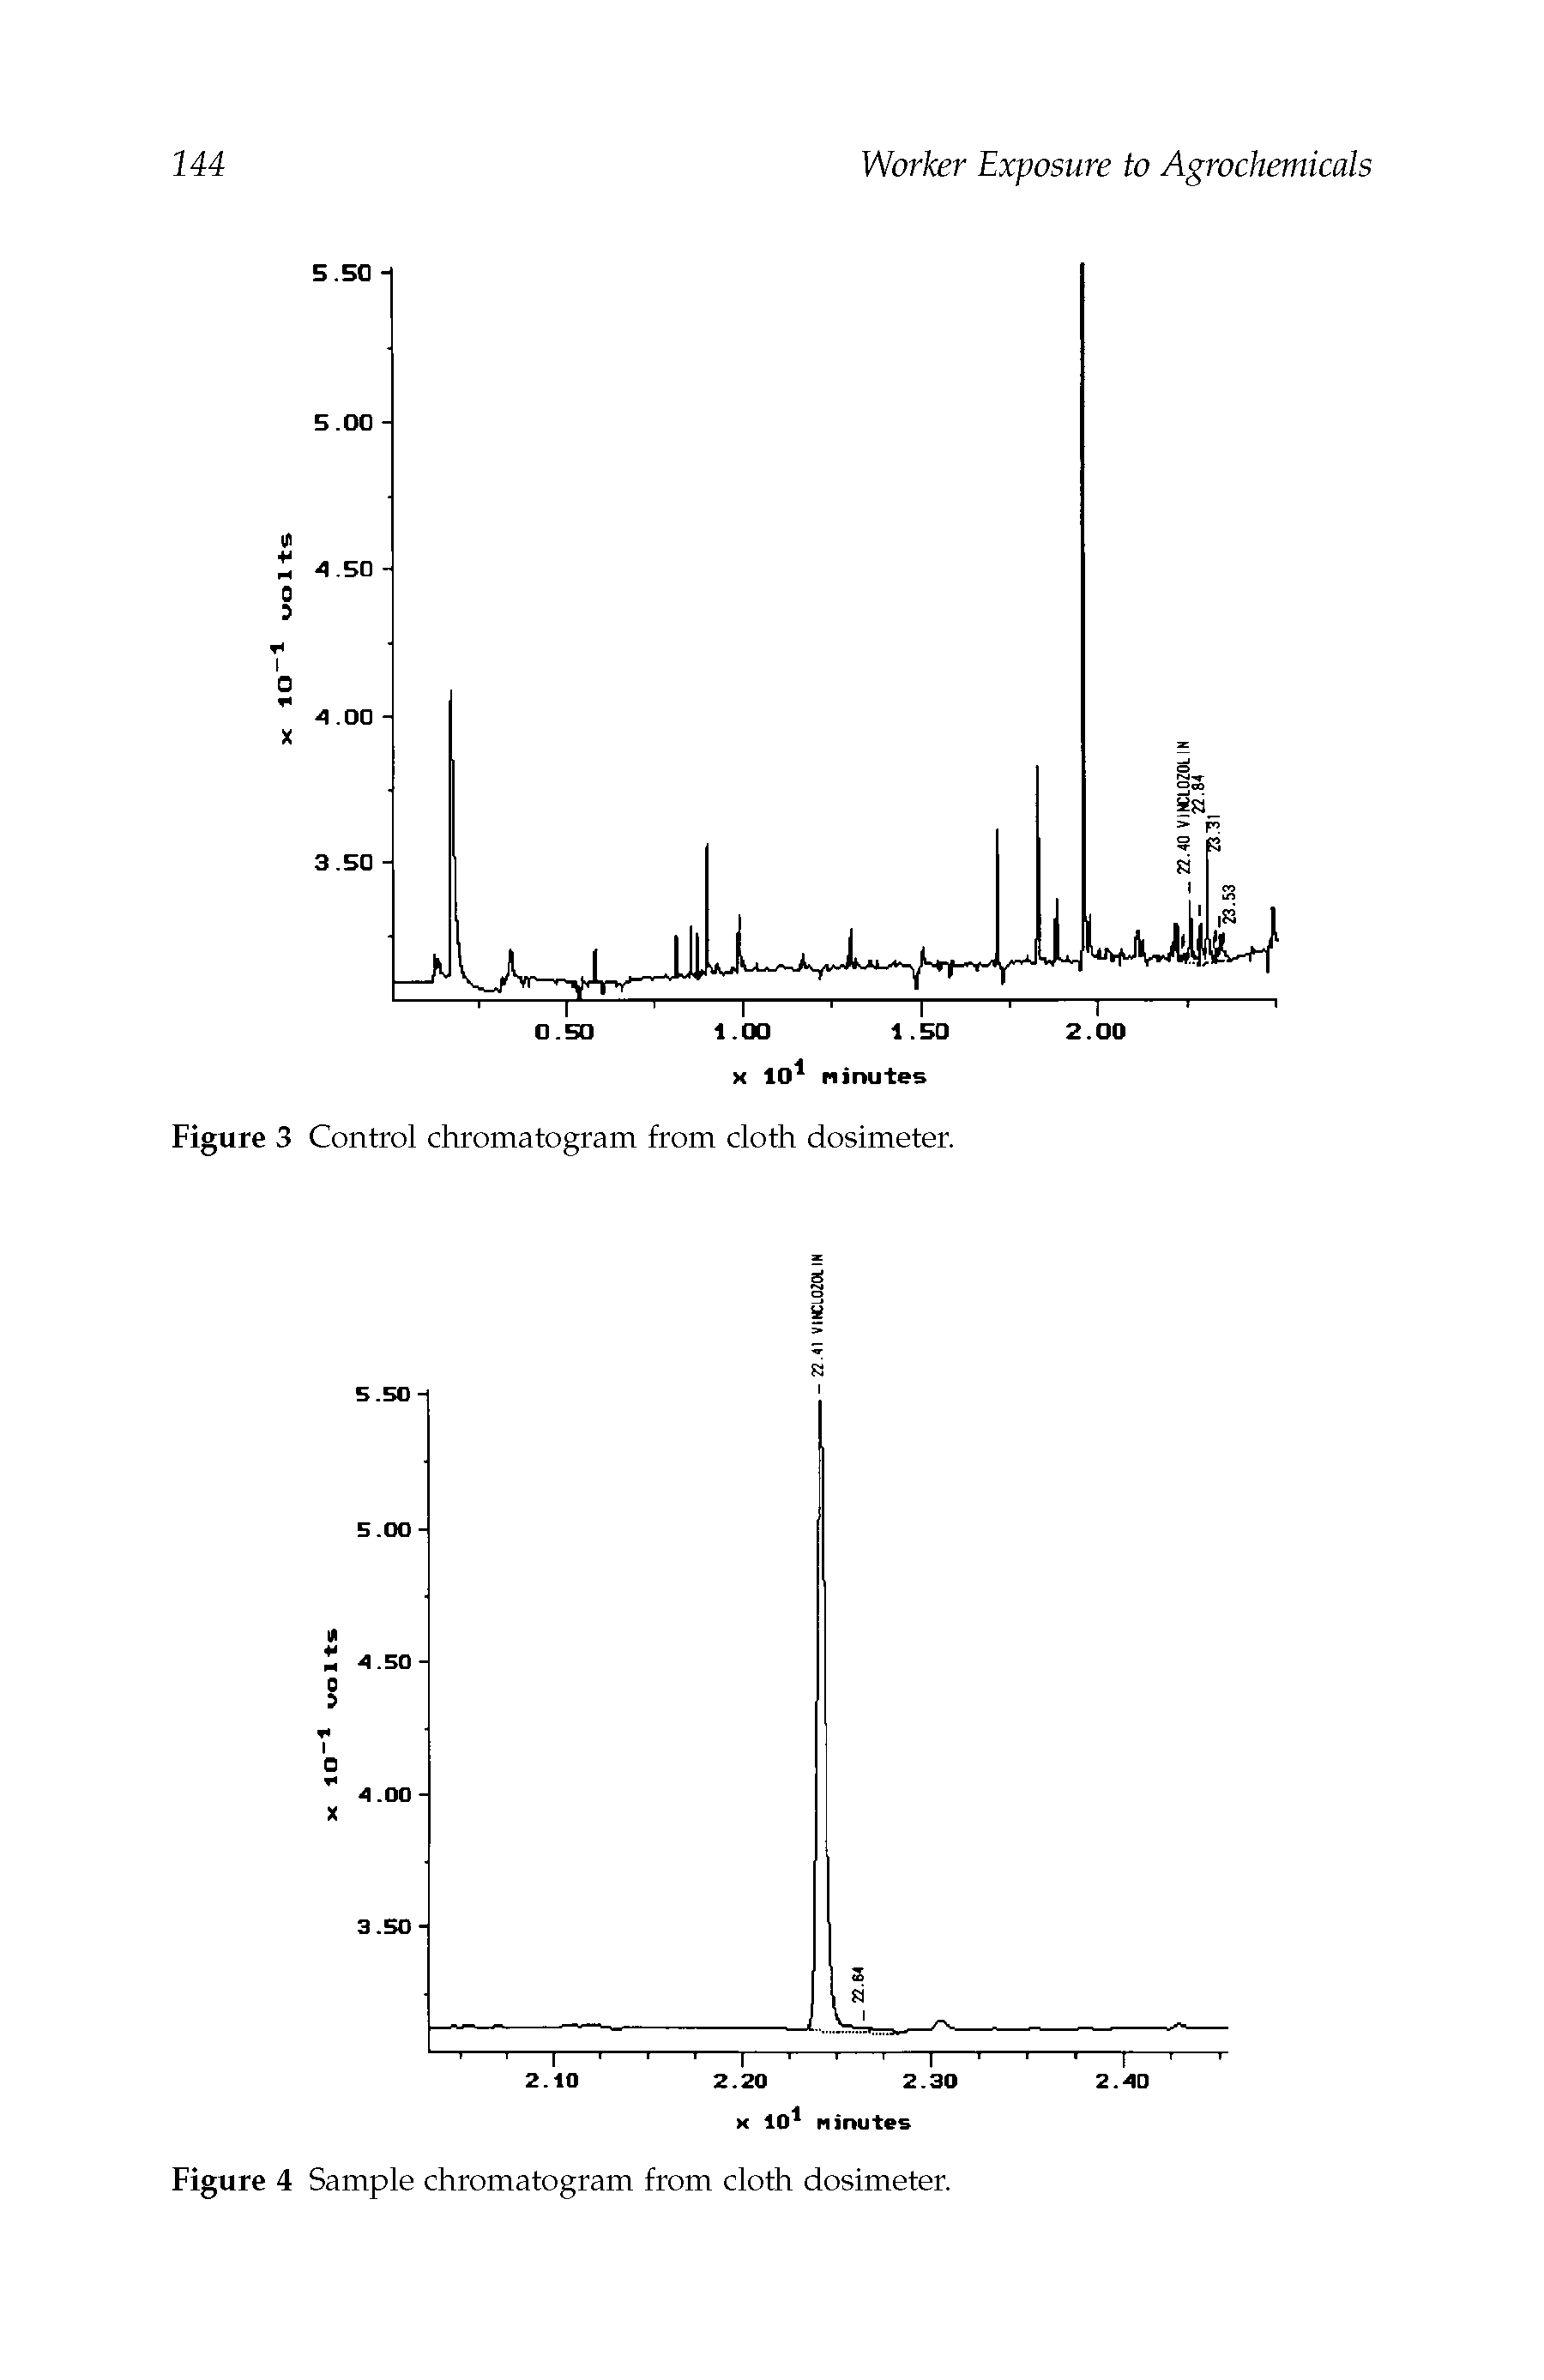 Figure 4 Sample chromatogram from cloth dosimeter.